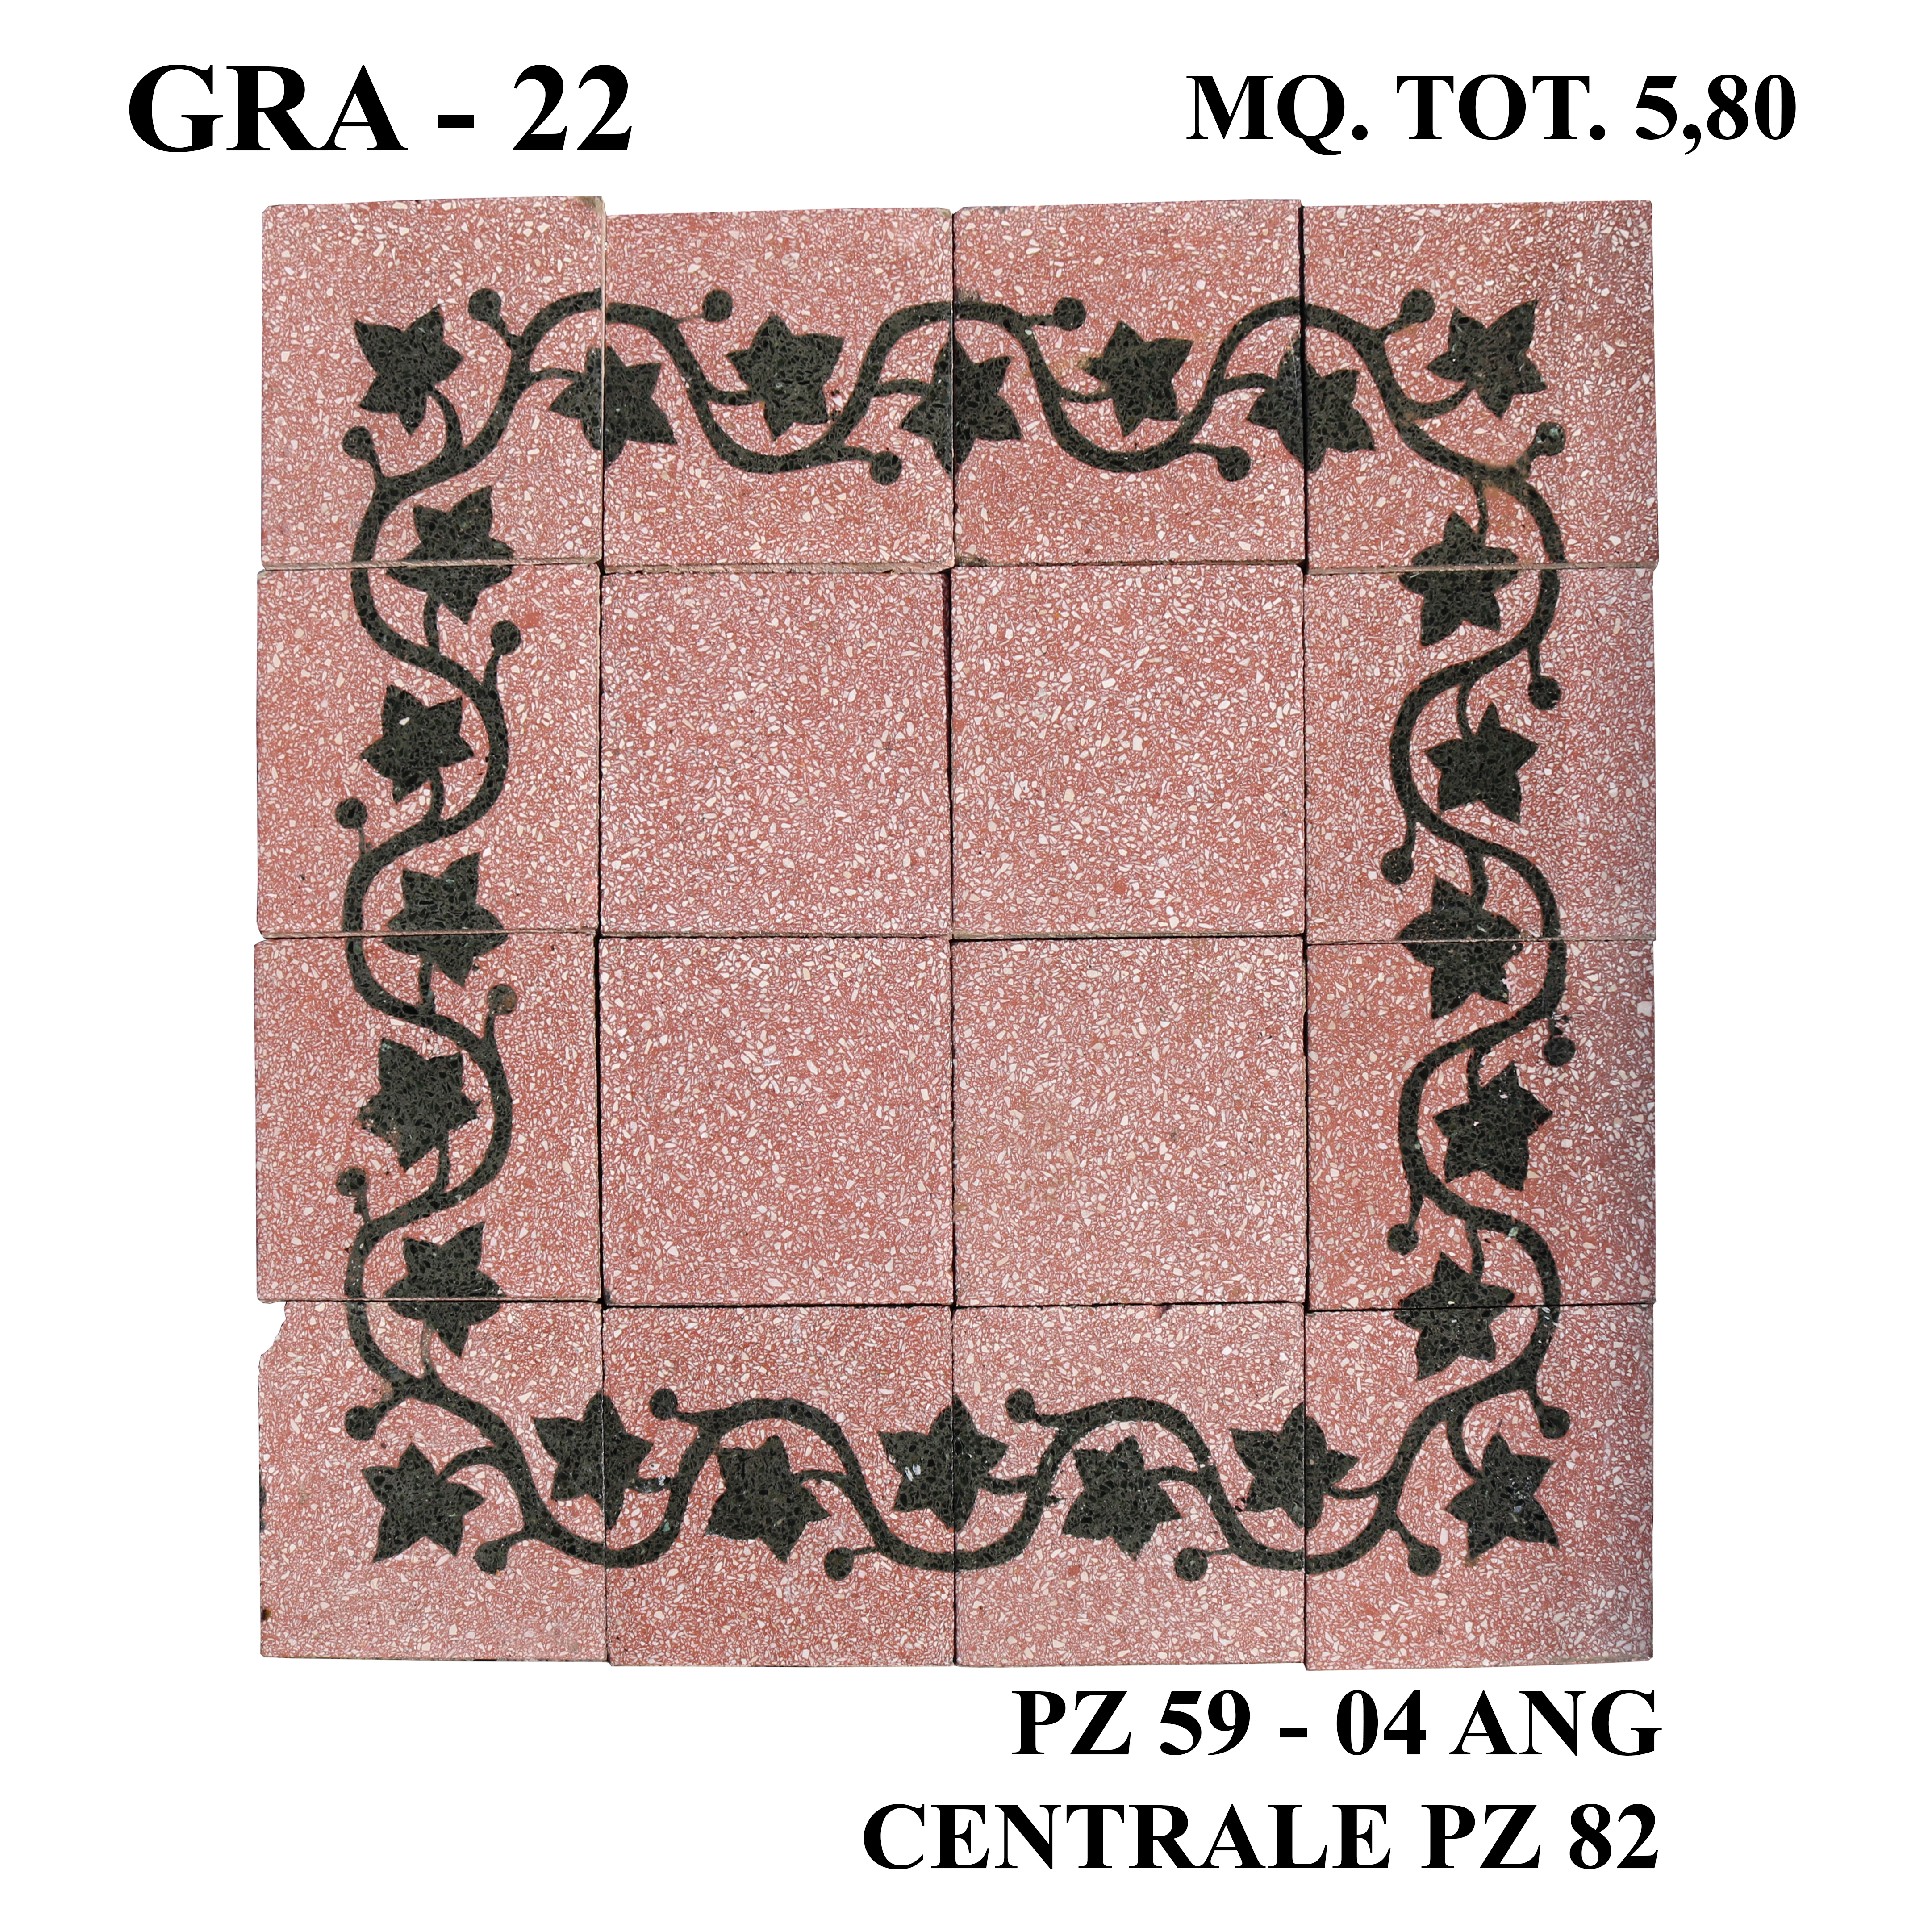 Antica pavimentazione in graniglia cm20x20. - Cementine e Graniglie - Pavimentazioni Antiche - Prodotti - Antichità Fiorillo